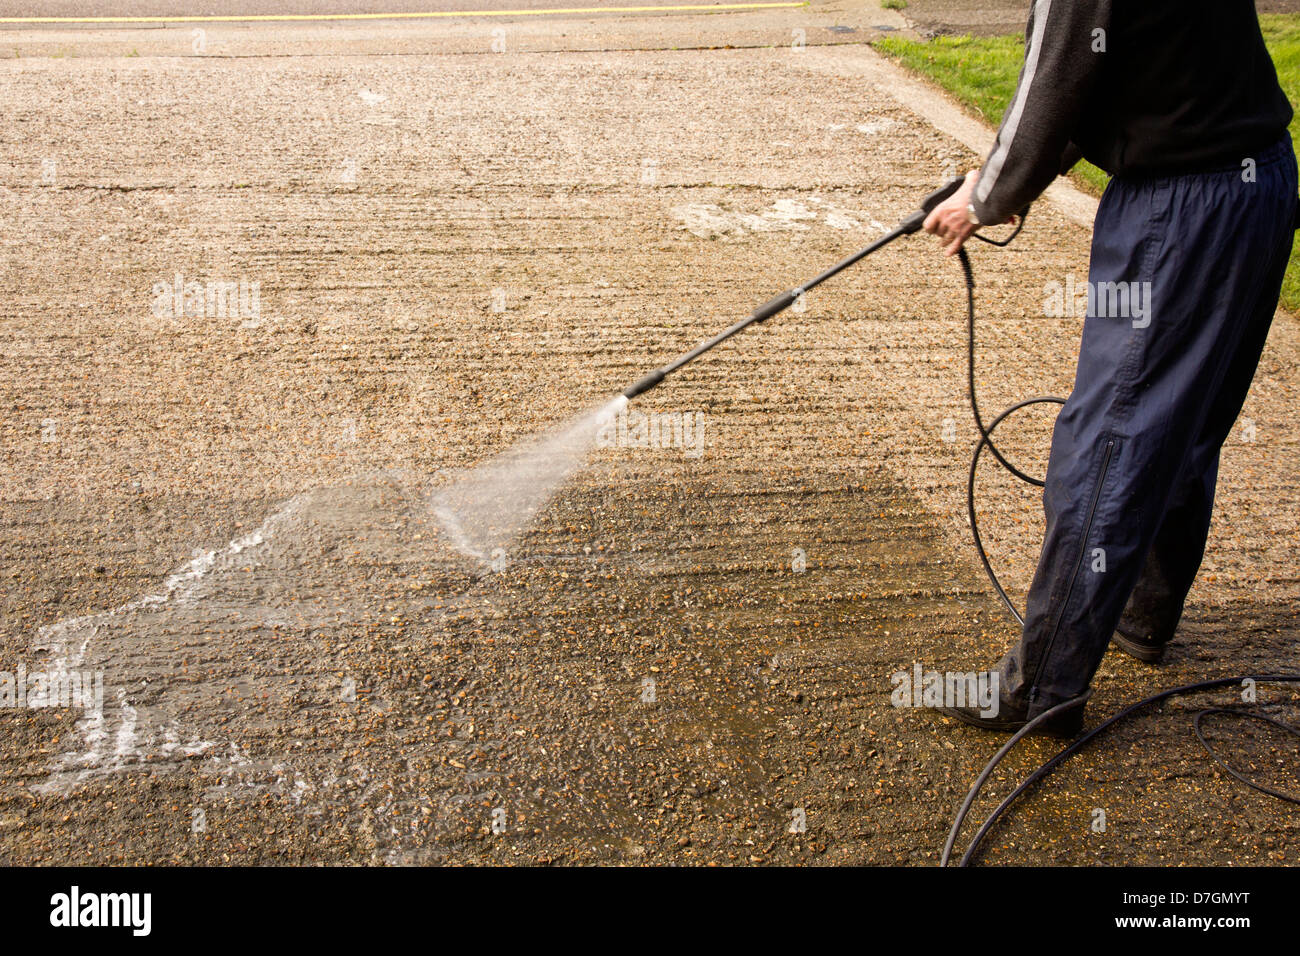 Man pressure washing a concrete driveway. Stock Photo